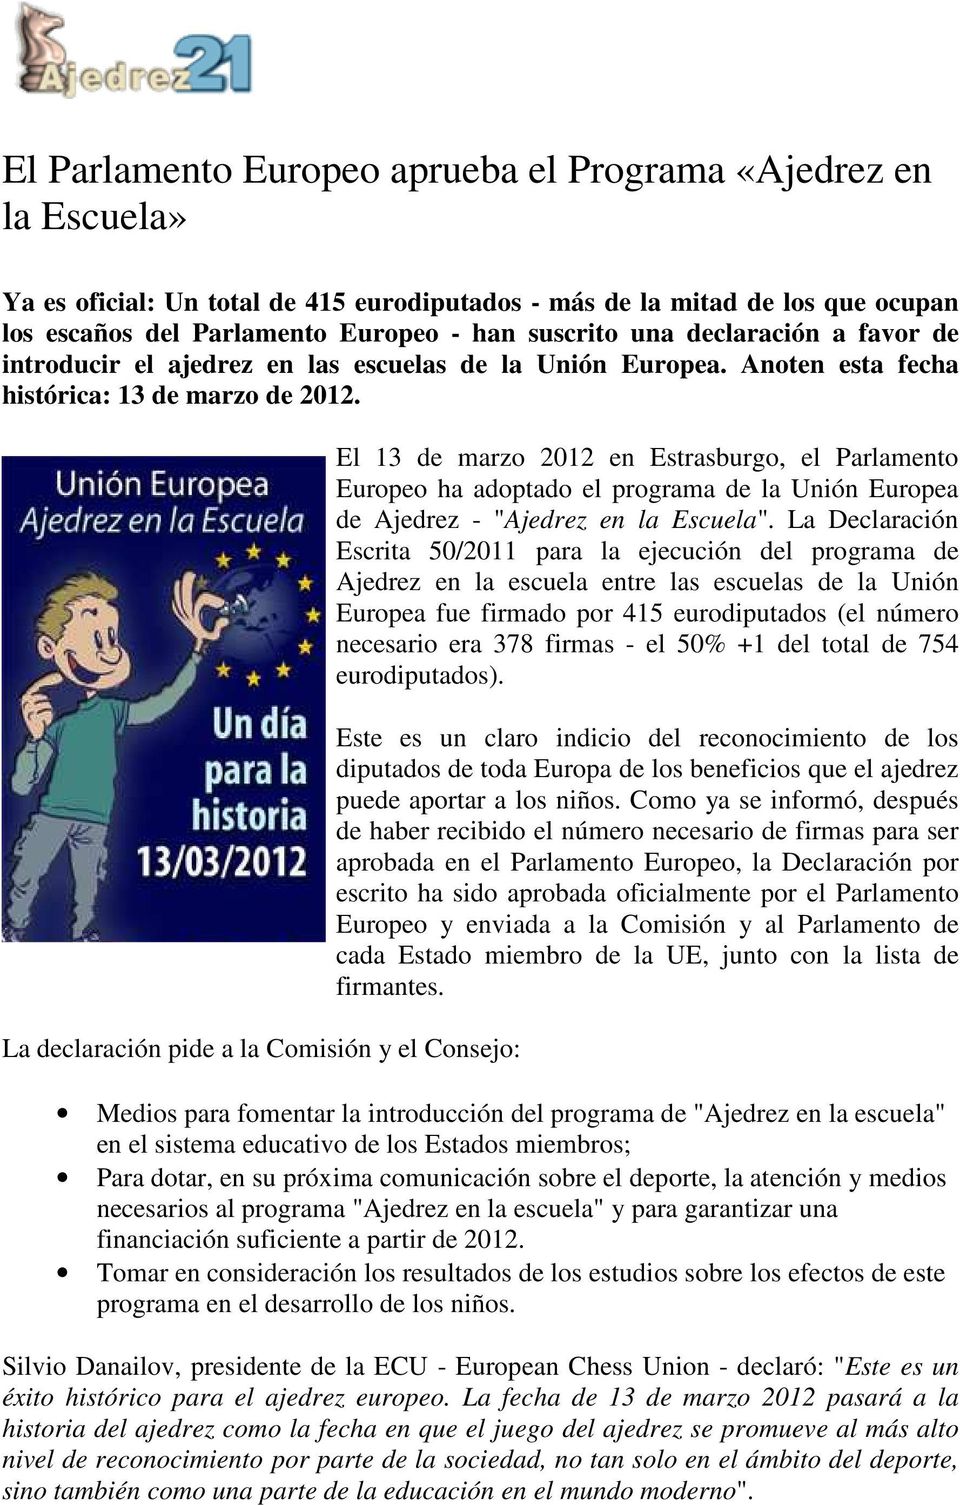 La declaración pide a la Comisión y el Consejo: El 13 de marzo 2012 en Estrasburgo, el Parlamento Europeo ha adoptado el programa de la Unión Europea de Ajedrez - "Ajedrez en la Escuela".